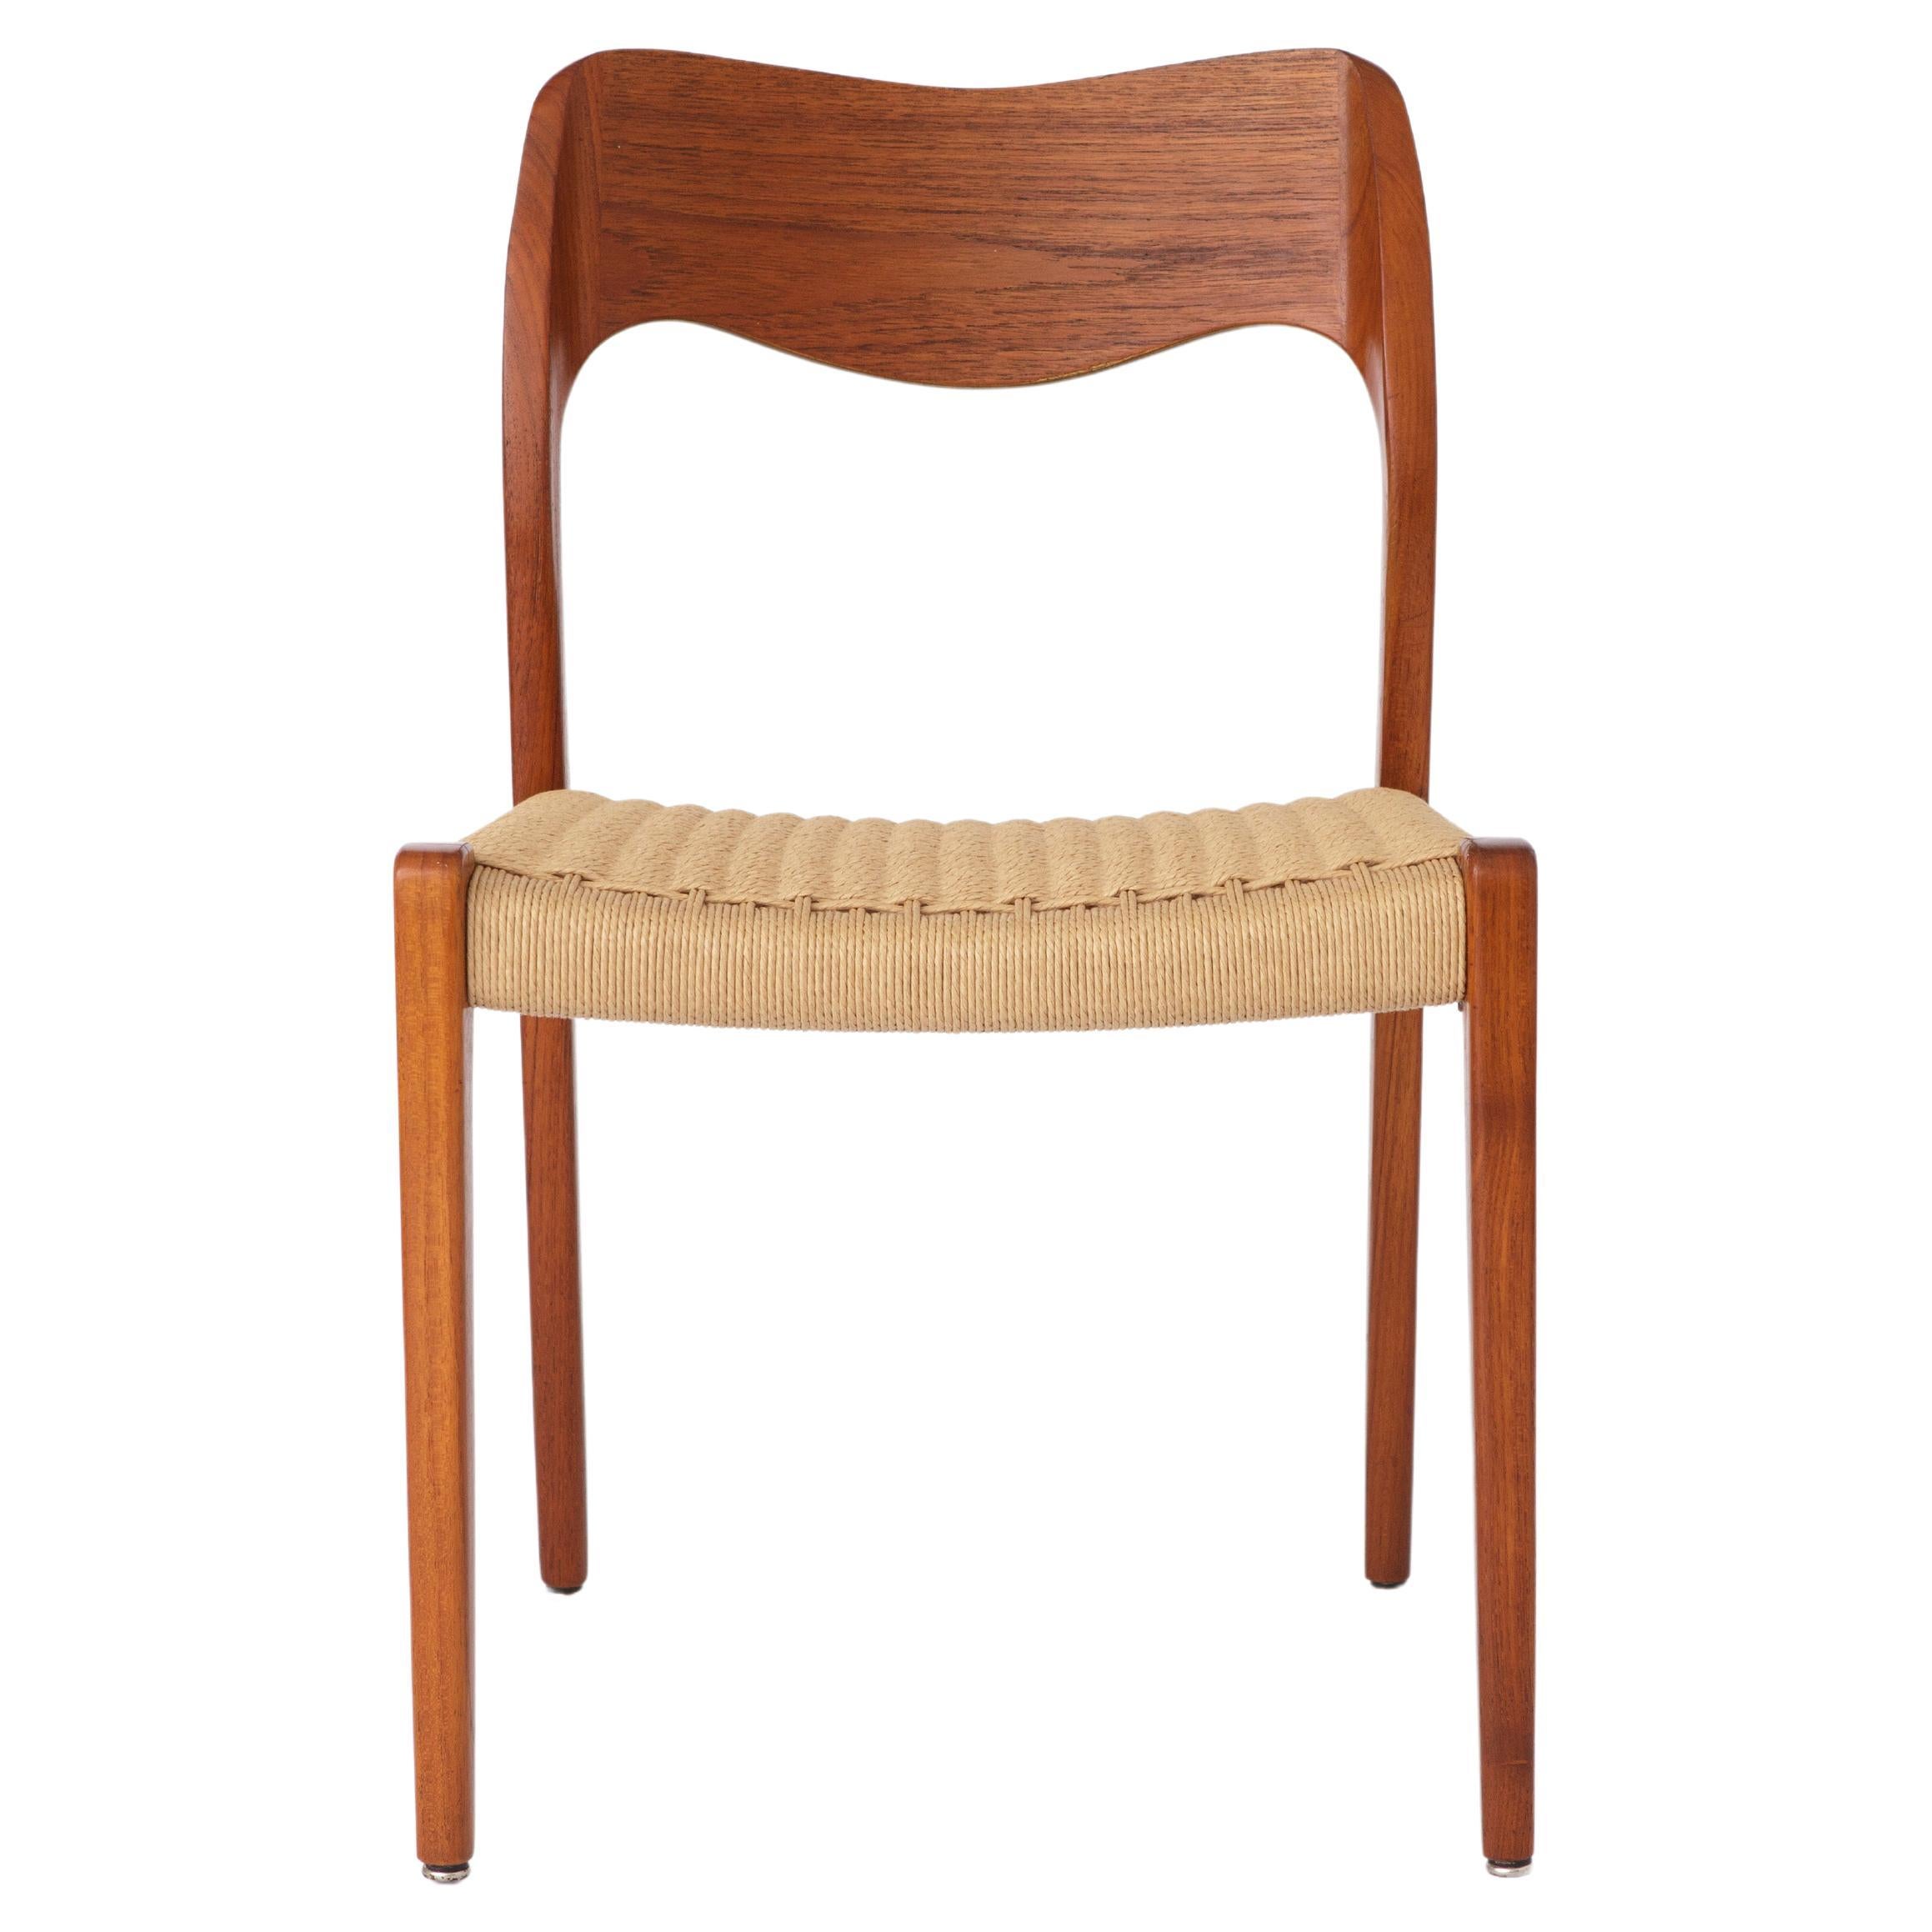 Niels Moller Chair, Model 71, 1950s Vintage Teak - Repaired For Sale